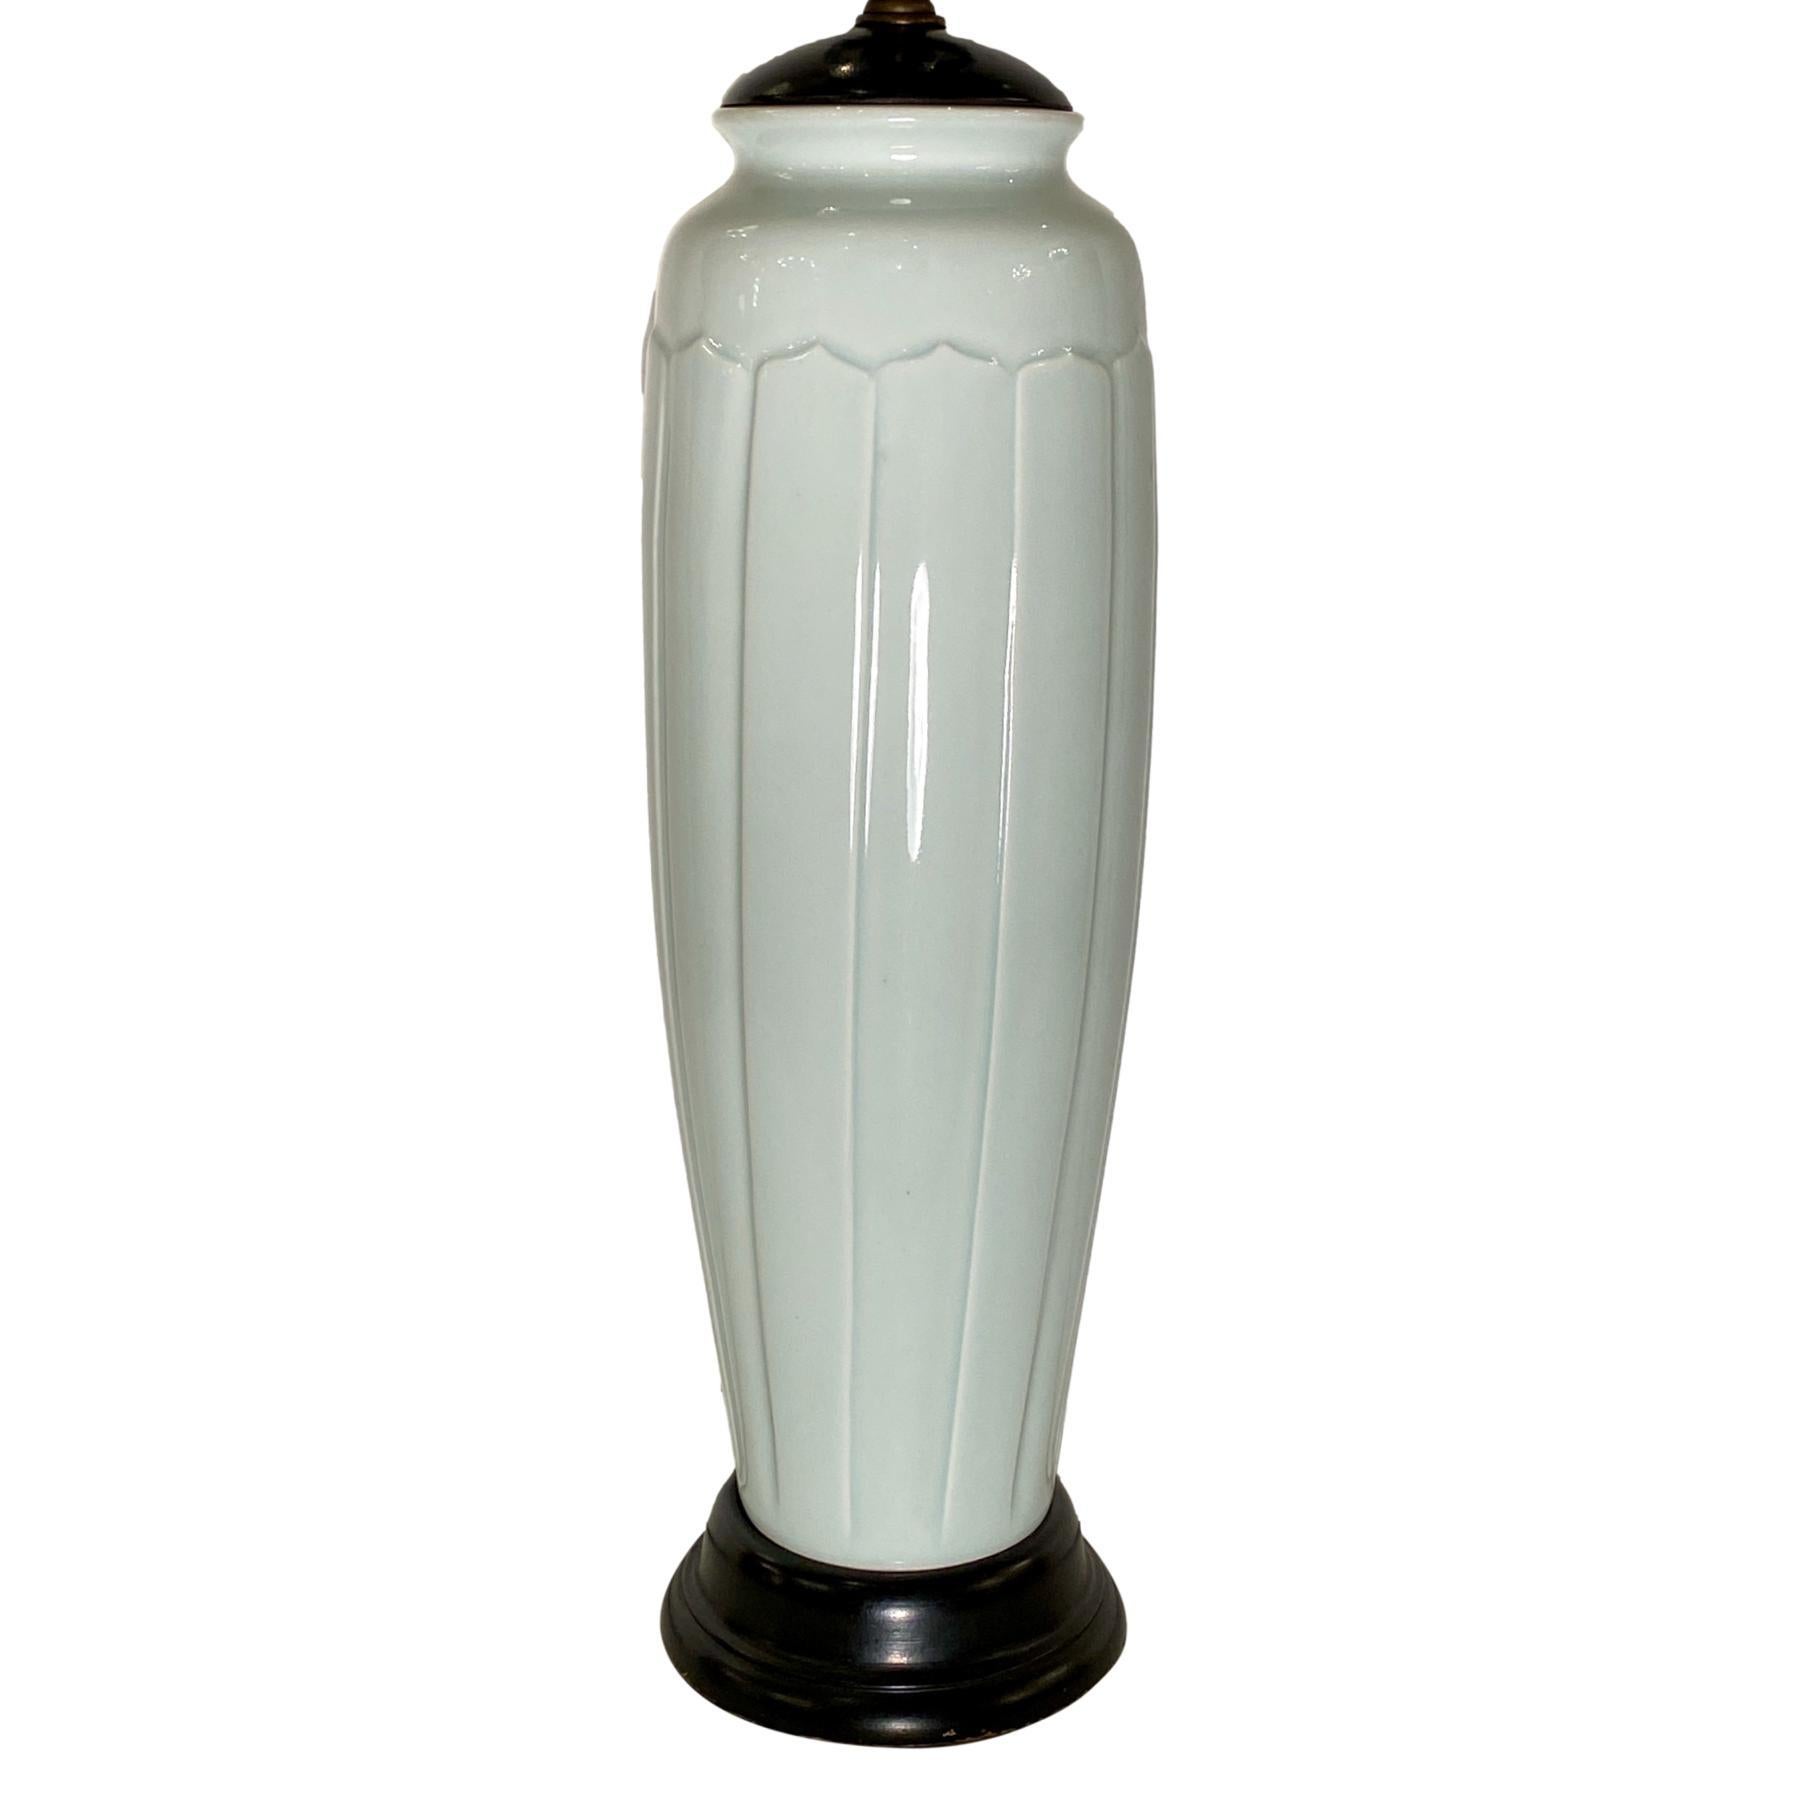 Lampe de table en porcelaine française des années 1940 avec base en bois.

Mesures :
Hauteur du corps : 16,5